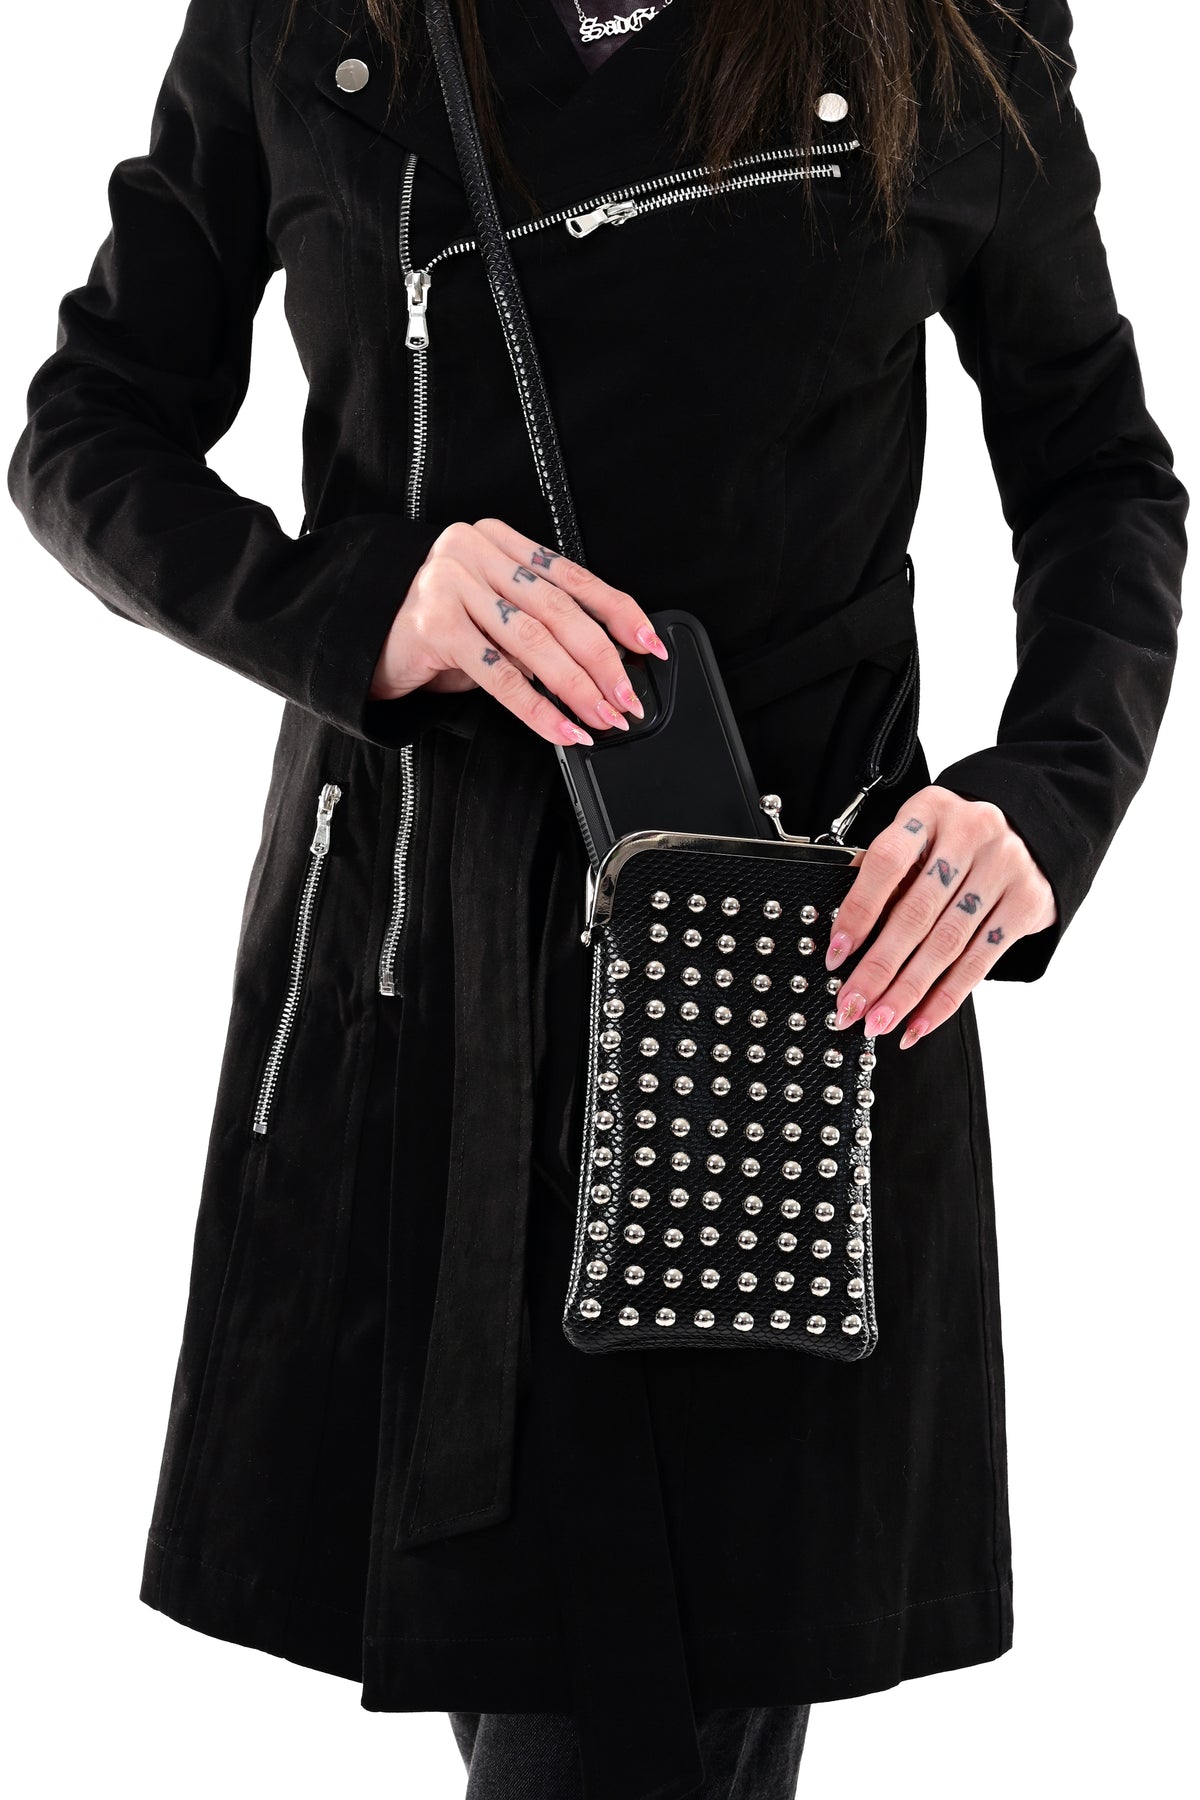 Studded Mini Crossbody Bag - Apple Leather - Last One!